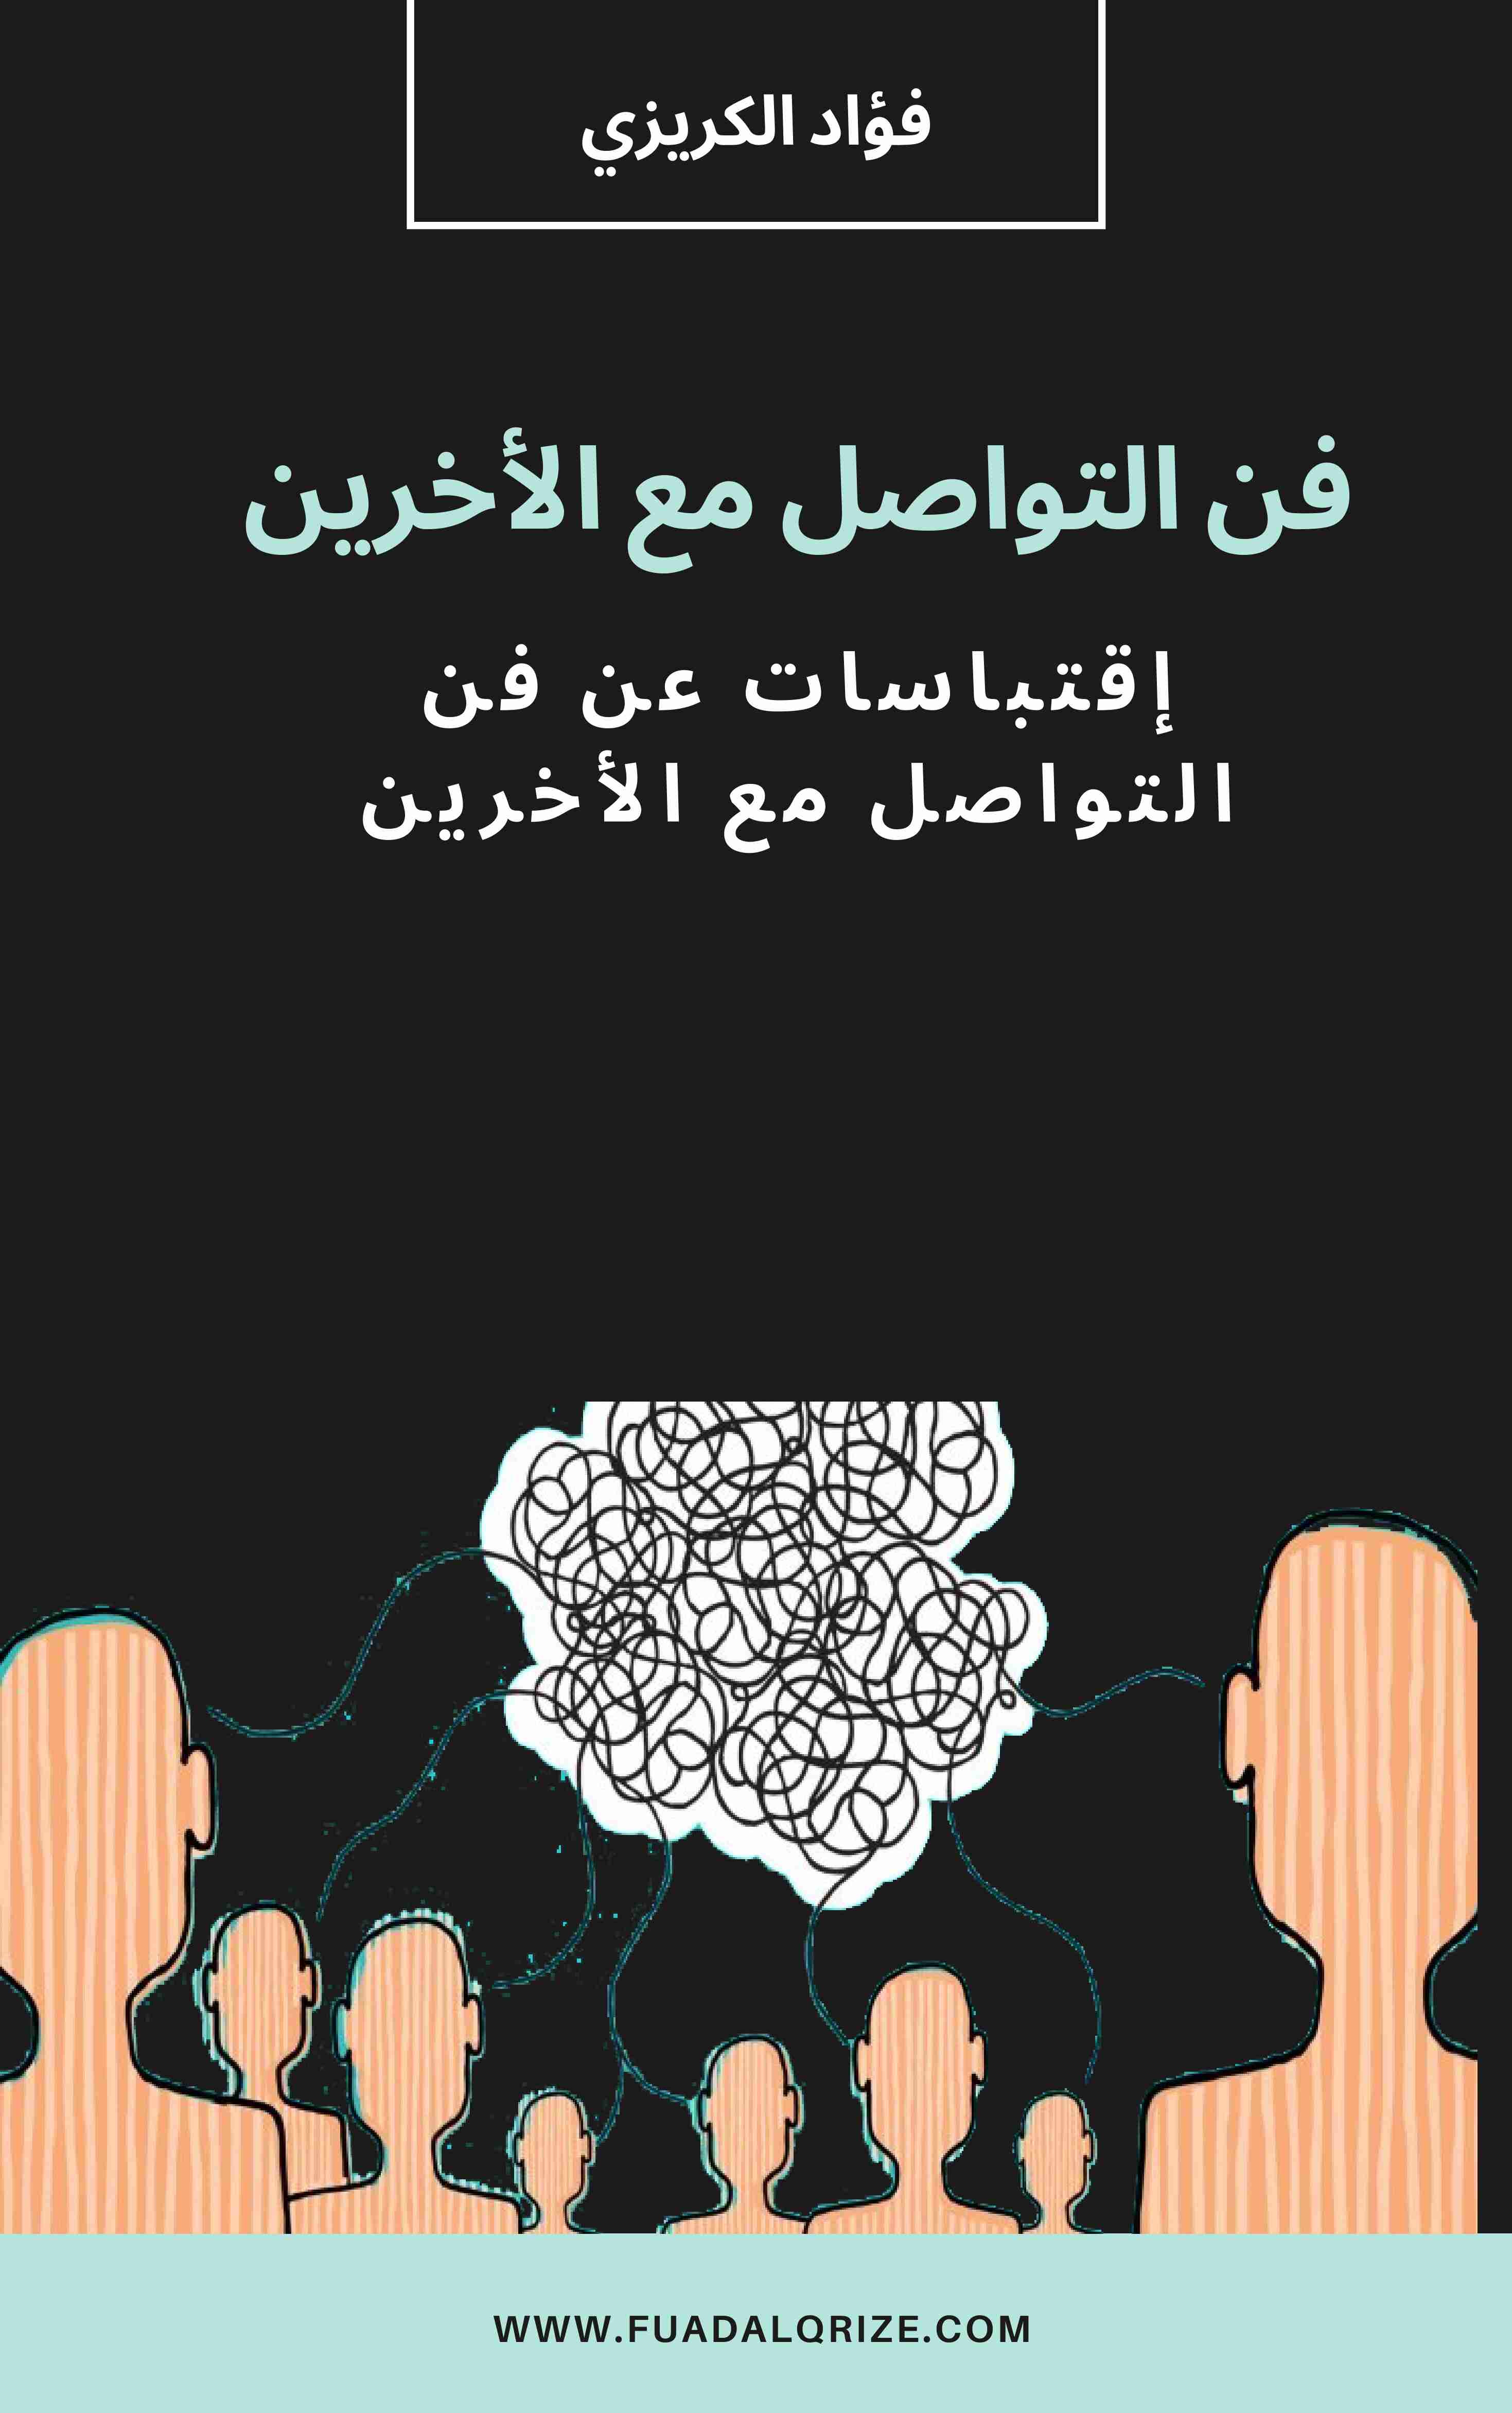 كتاب فن التواصل مع الأخرين لـ فؤاد الكريزي 